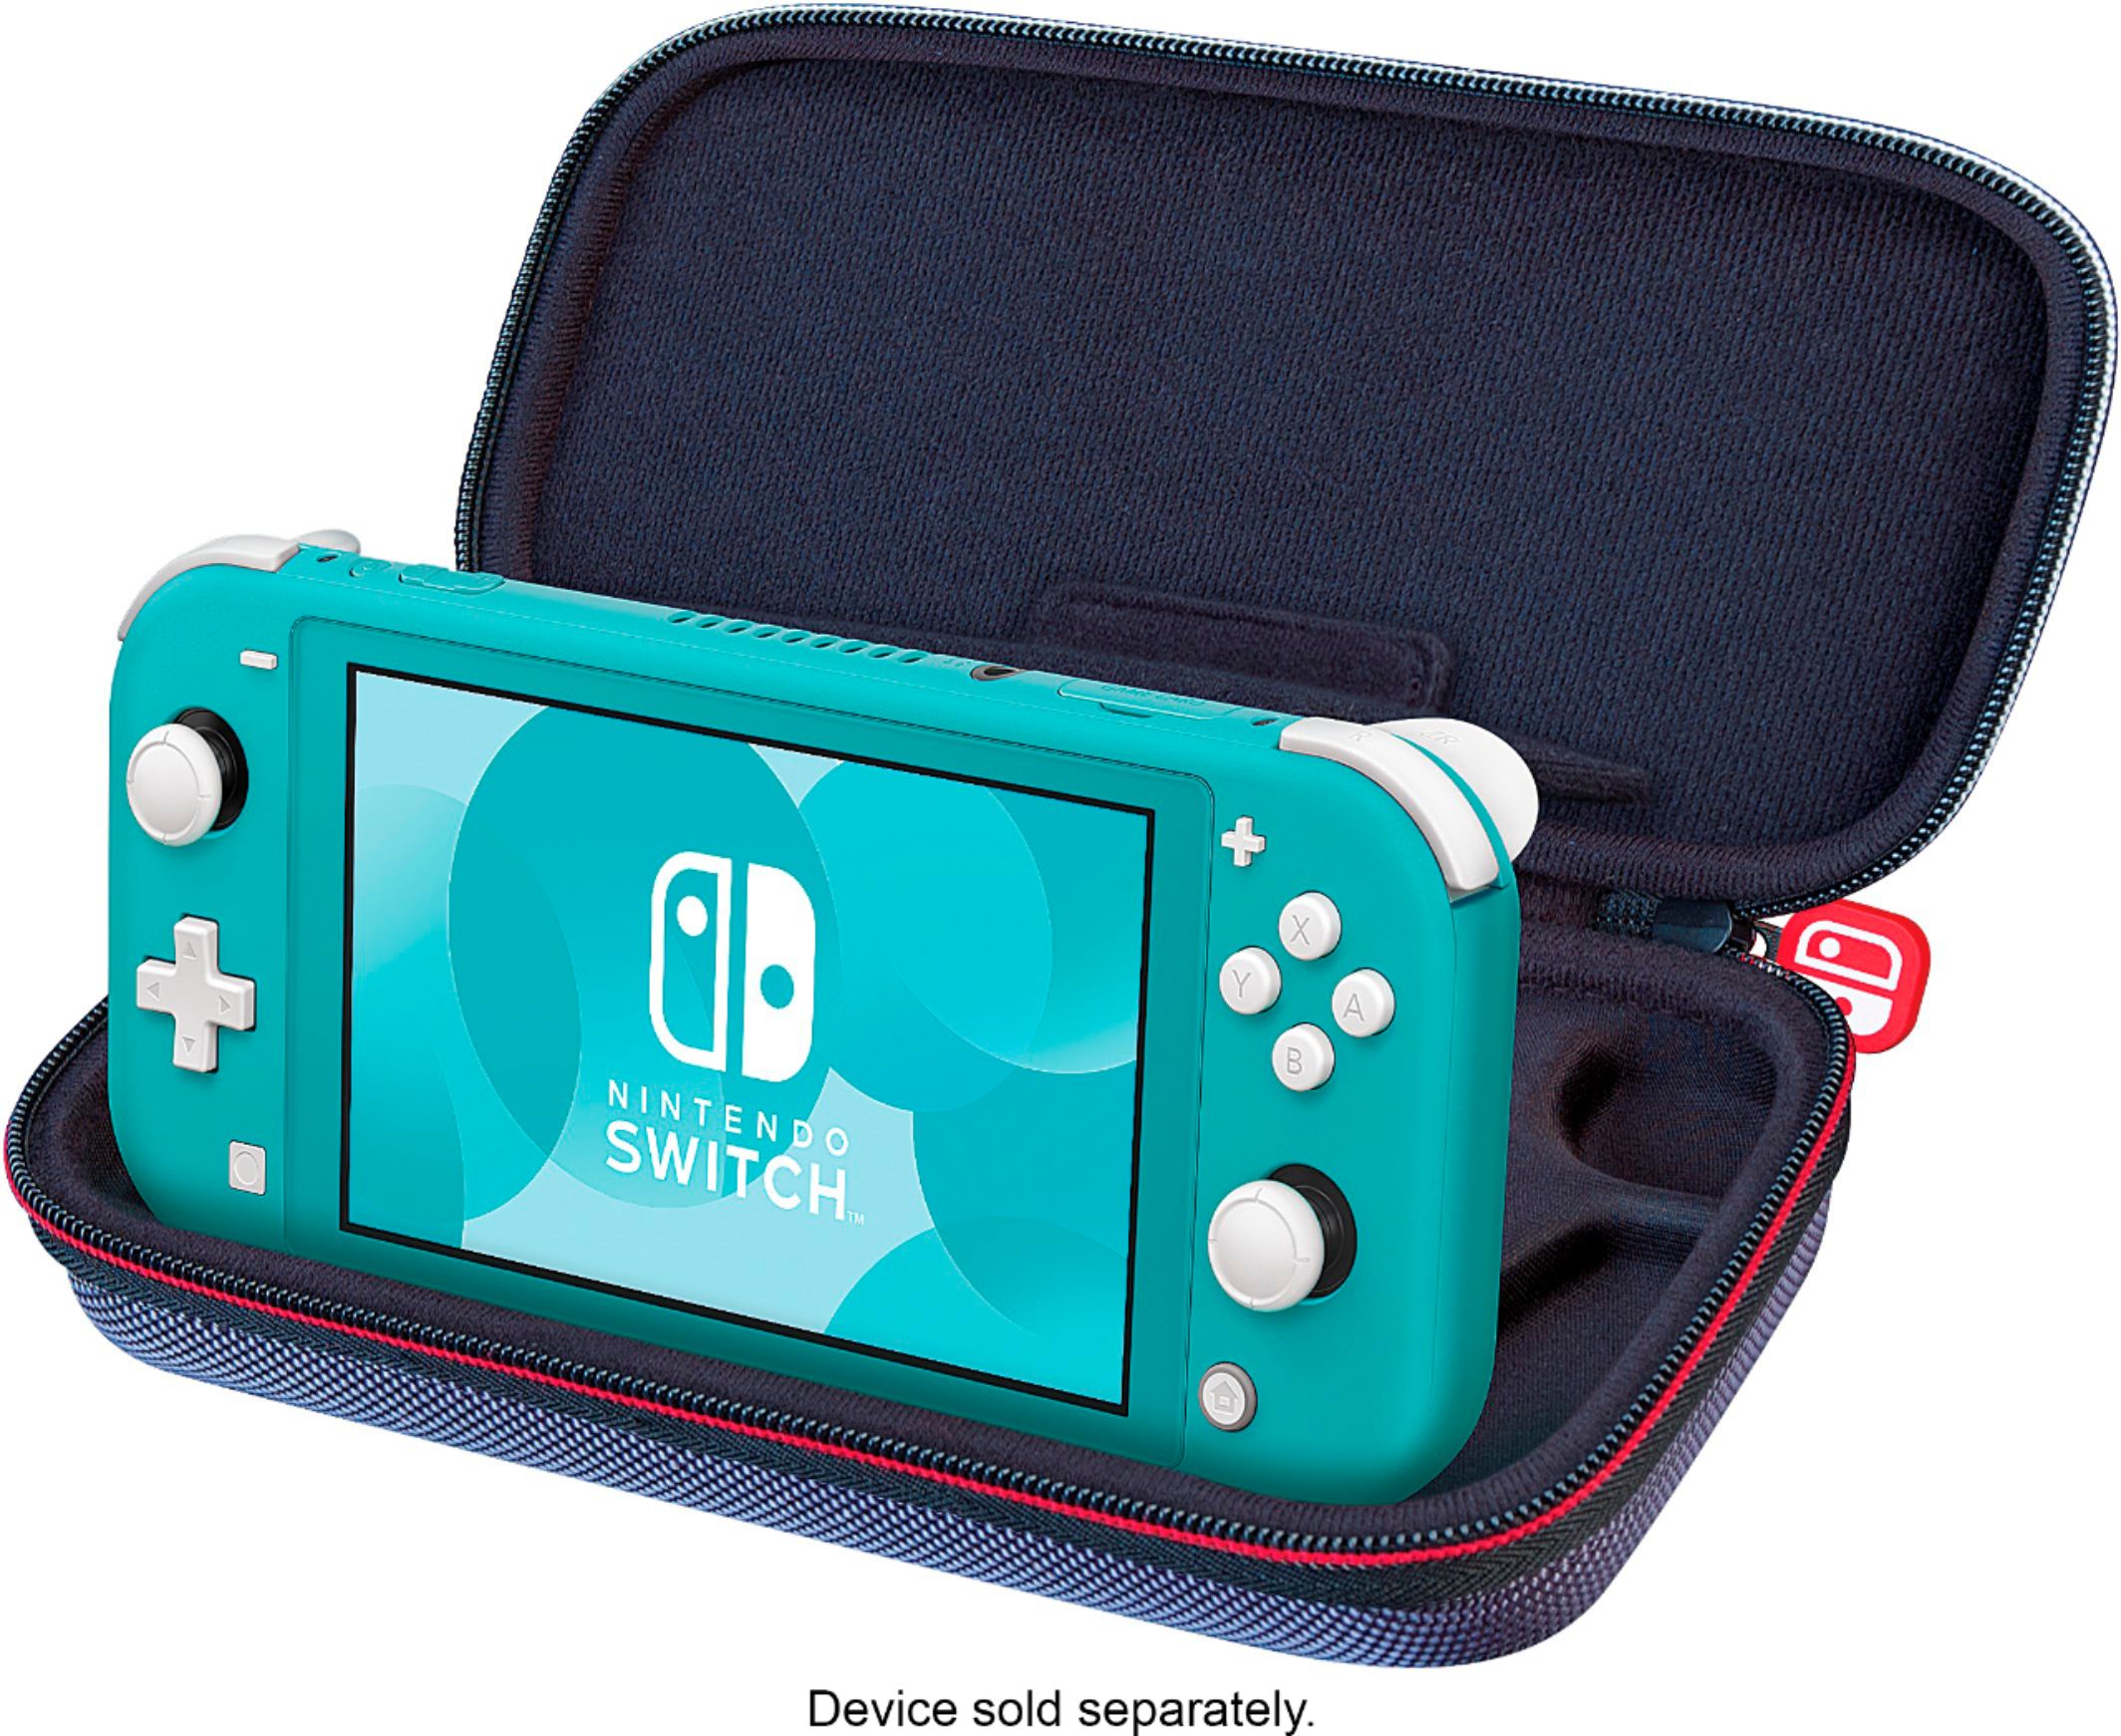 Étui de voyage mince RDS Game pour Nintendo Switch Lite